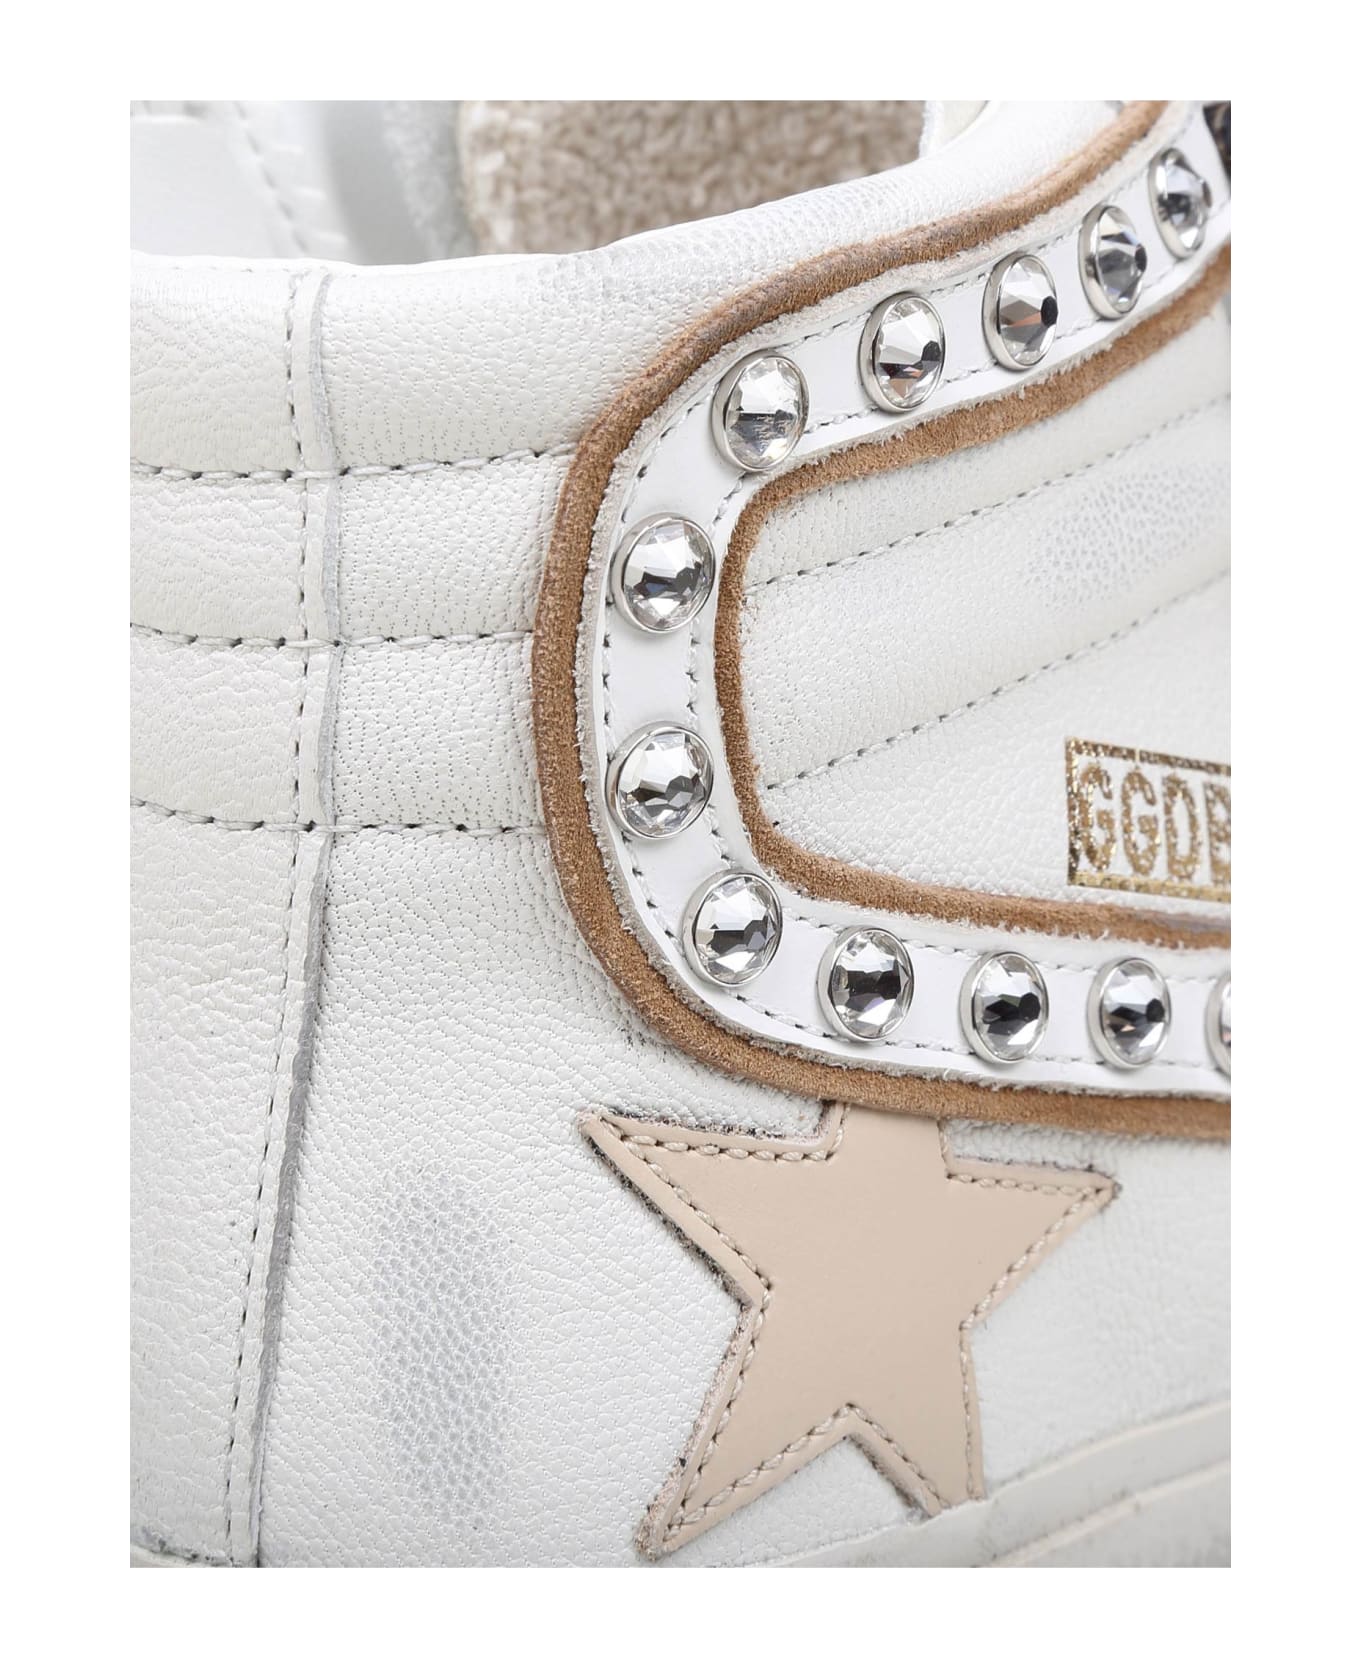 Golden Goose Slide Slide Penstar Sneakers In White Leather - White